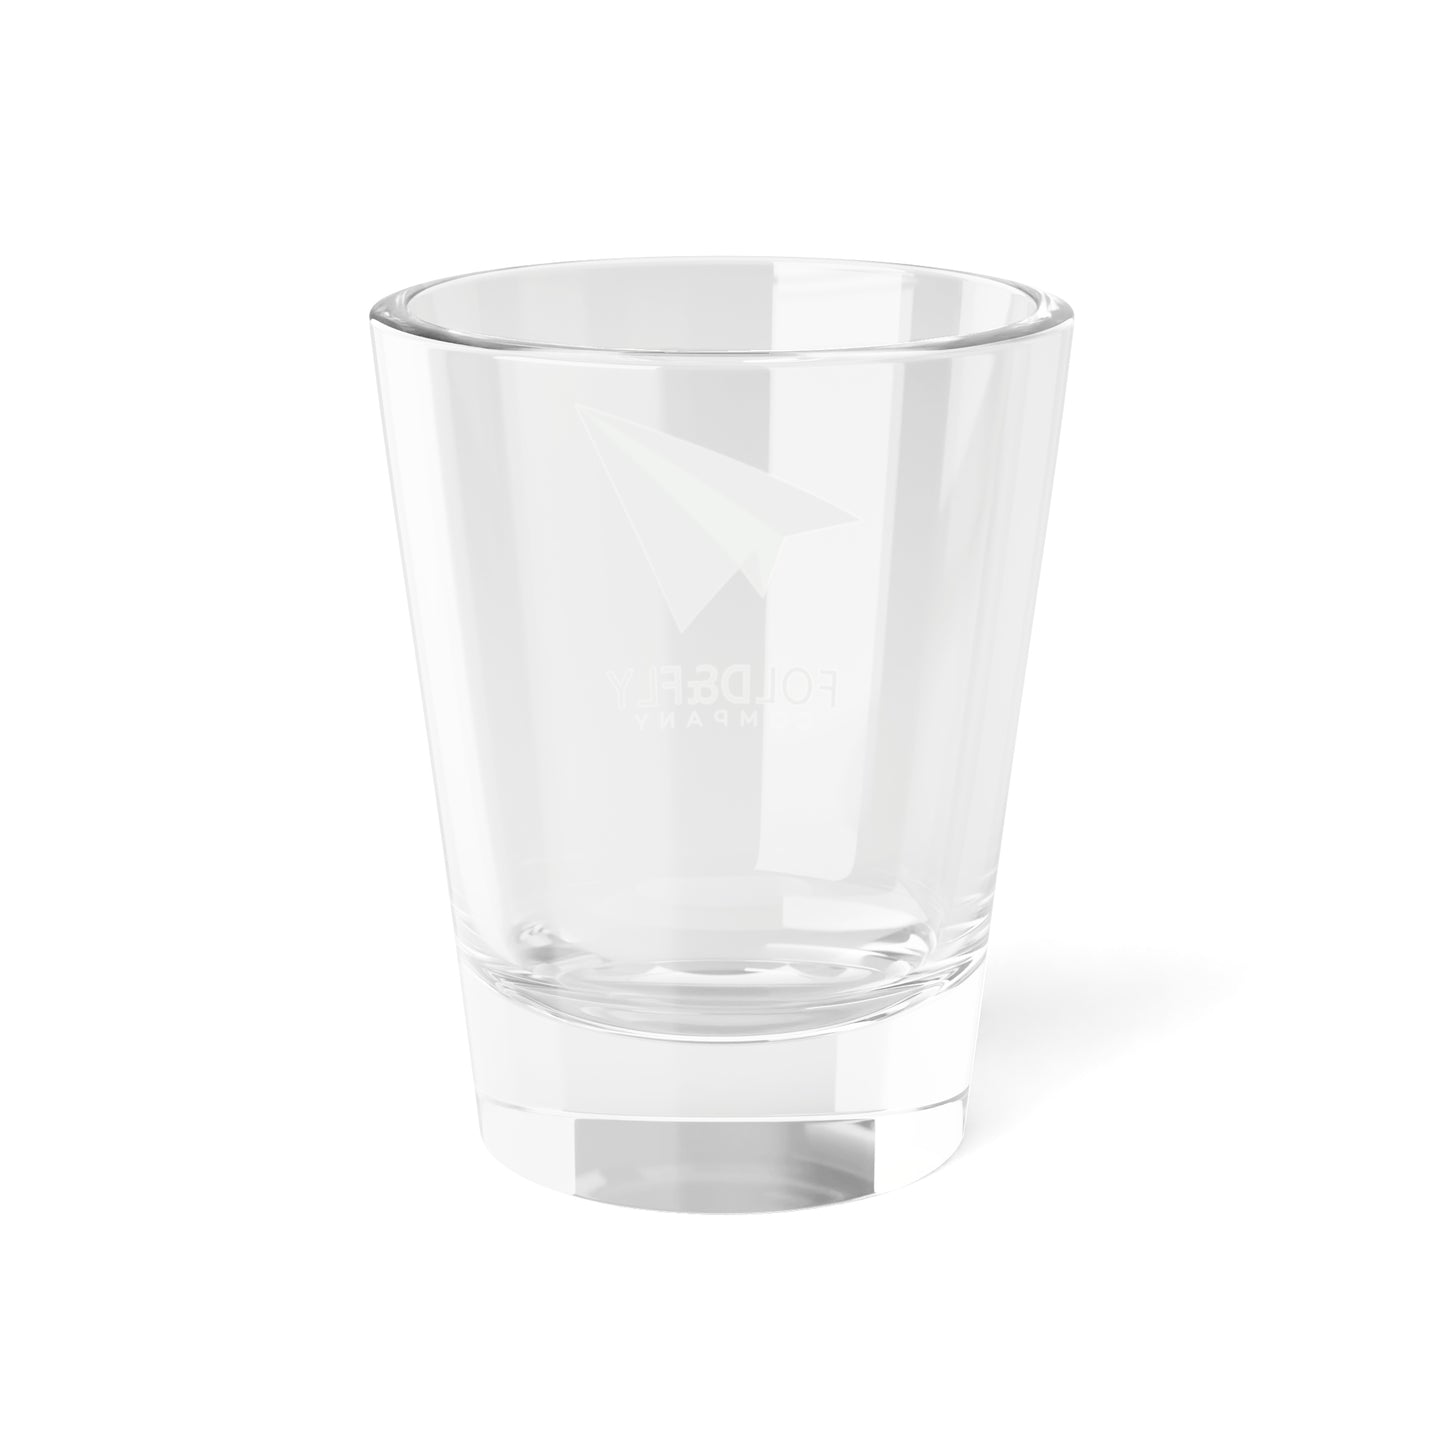 Fold&FlyCo Shot Glass, 1.5oz